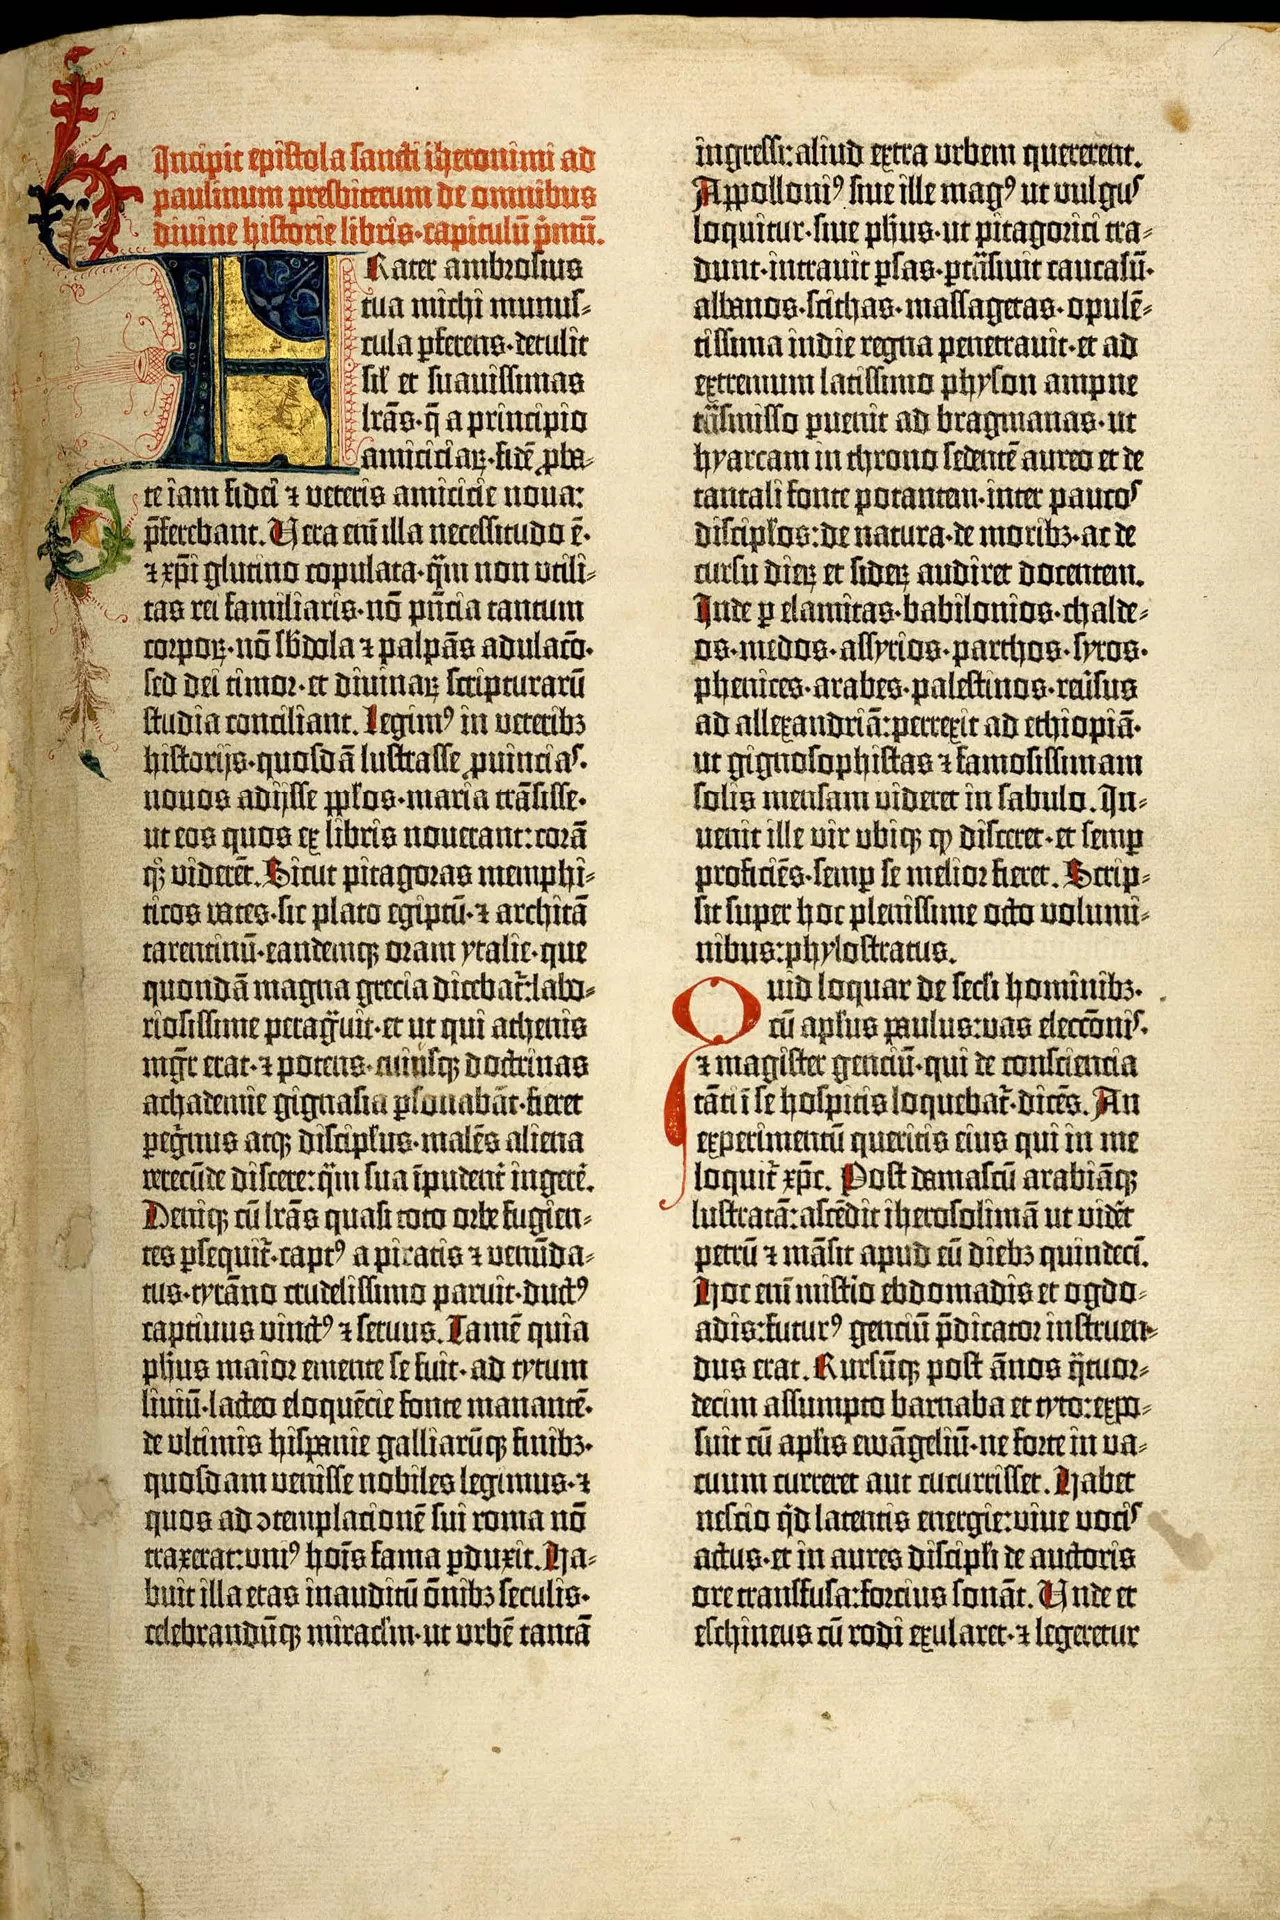 Der Anfang der Gutenberg-Bibel, Teil 1. Altes Testament, Vorrede des Hieronymus, lateinischer Text im Buchdruck mit Verzierung.